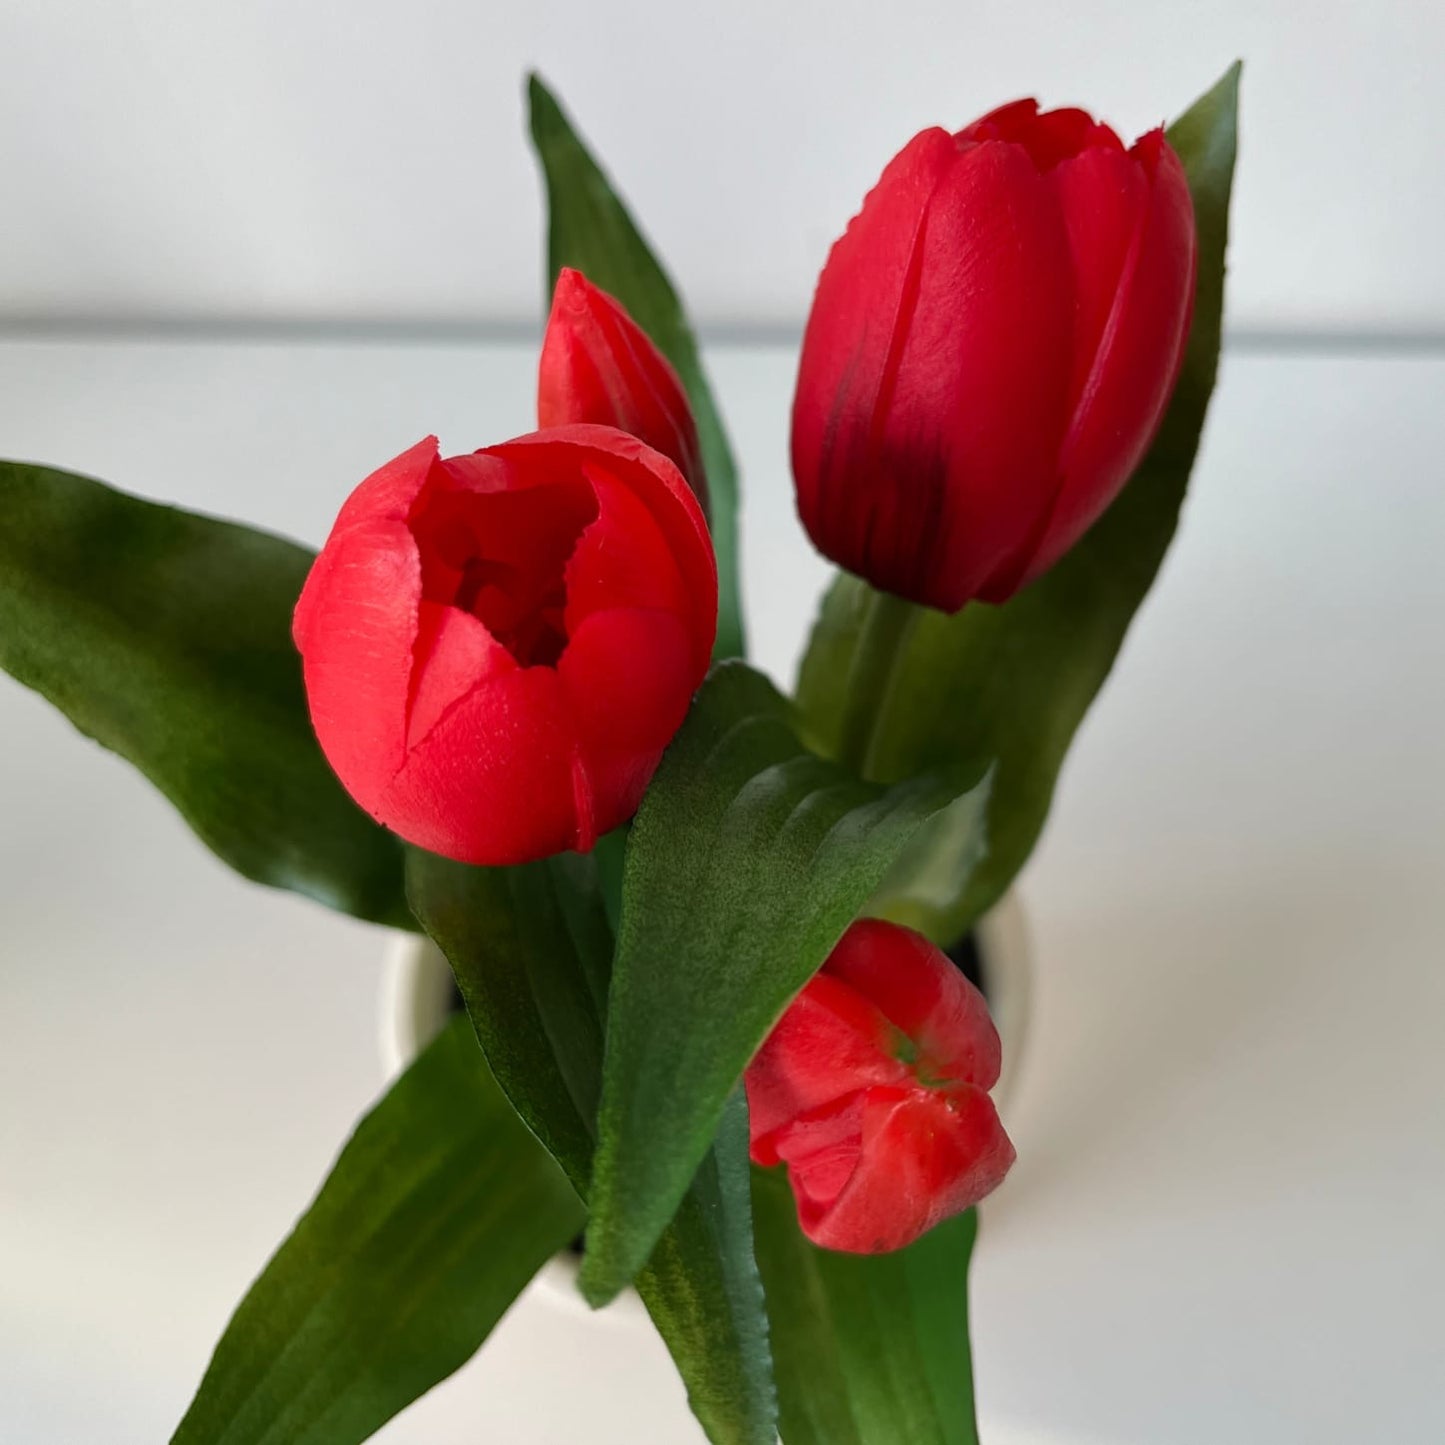 A legélethűbb piros gumi tulipán kaspóban